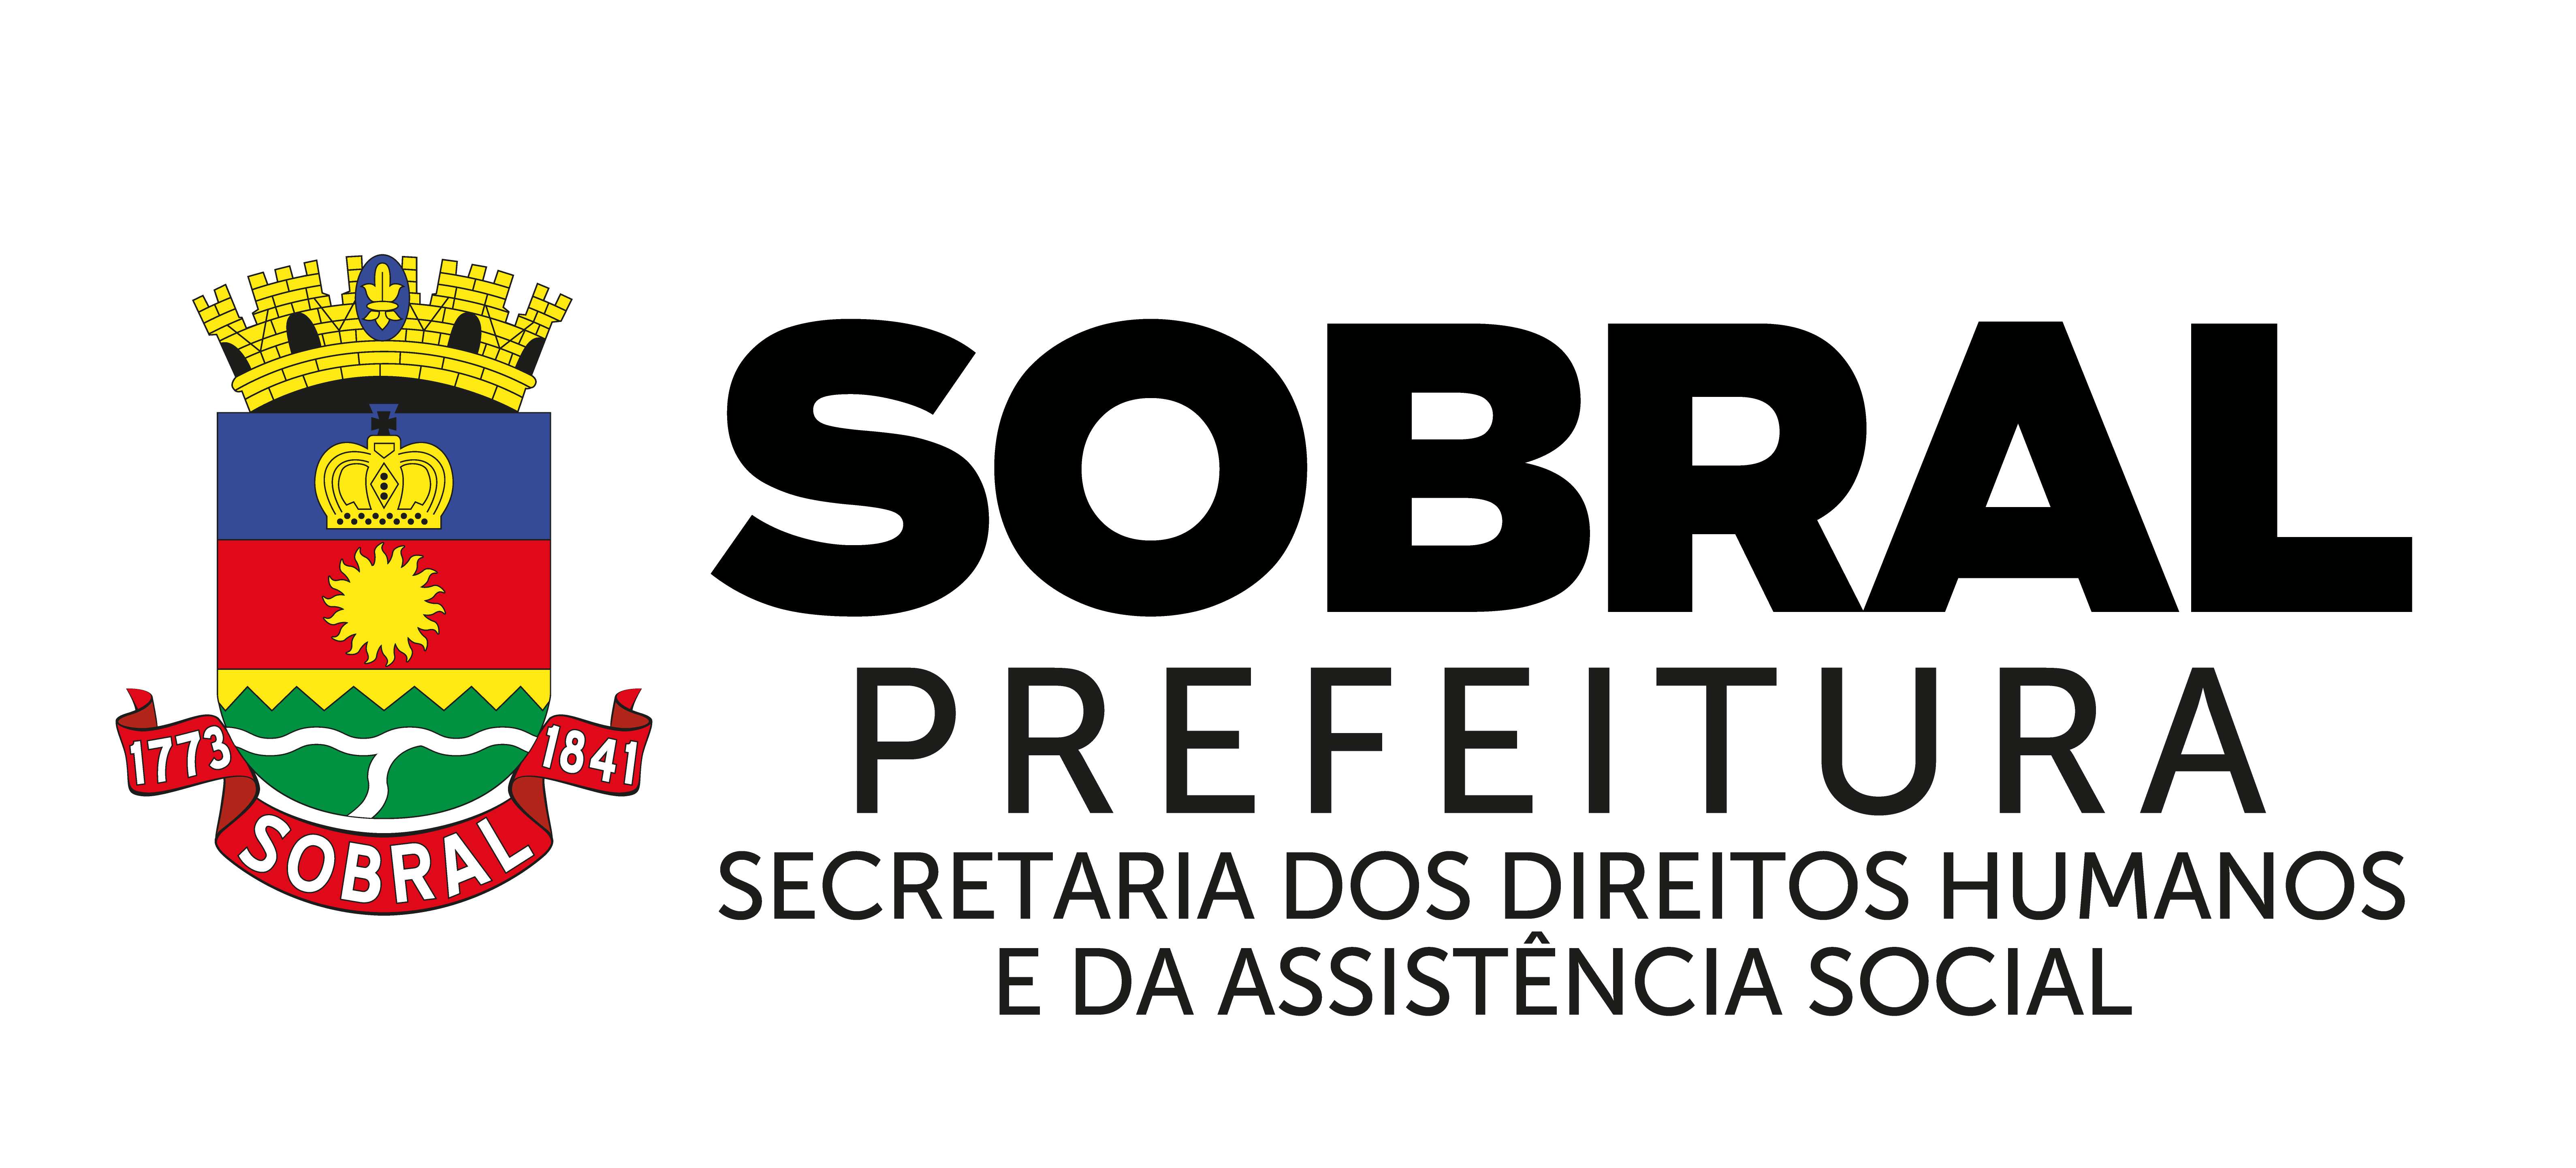 Logo Prefeitura Municipal de Sobral